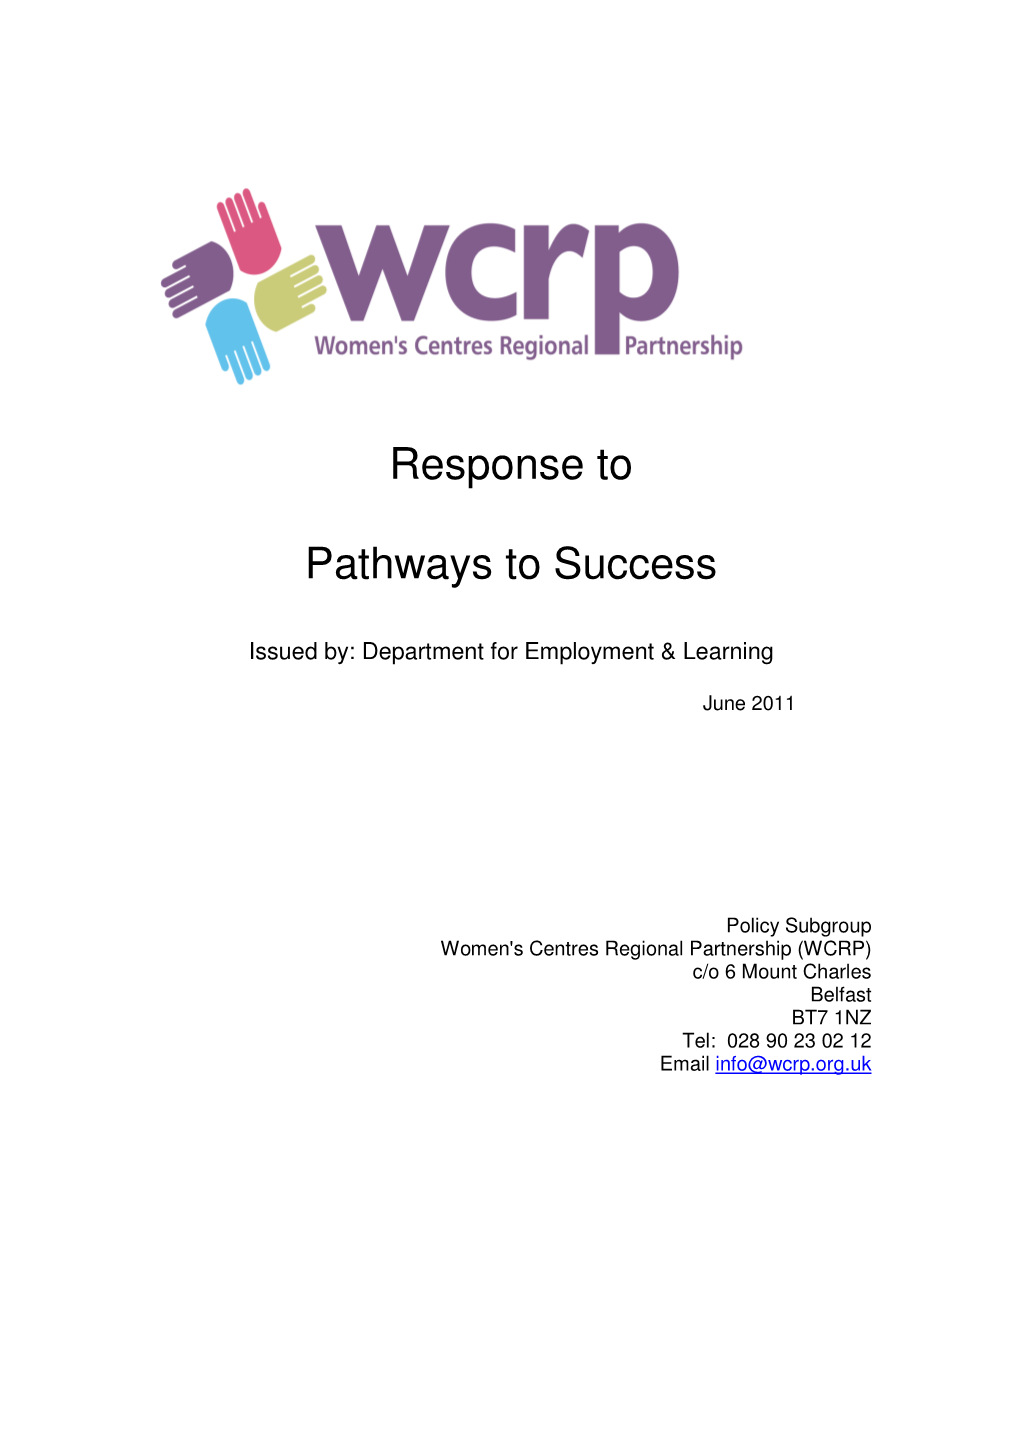 WCRP-Response-To-Pat